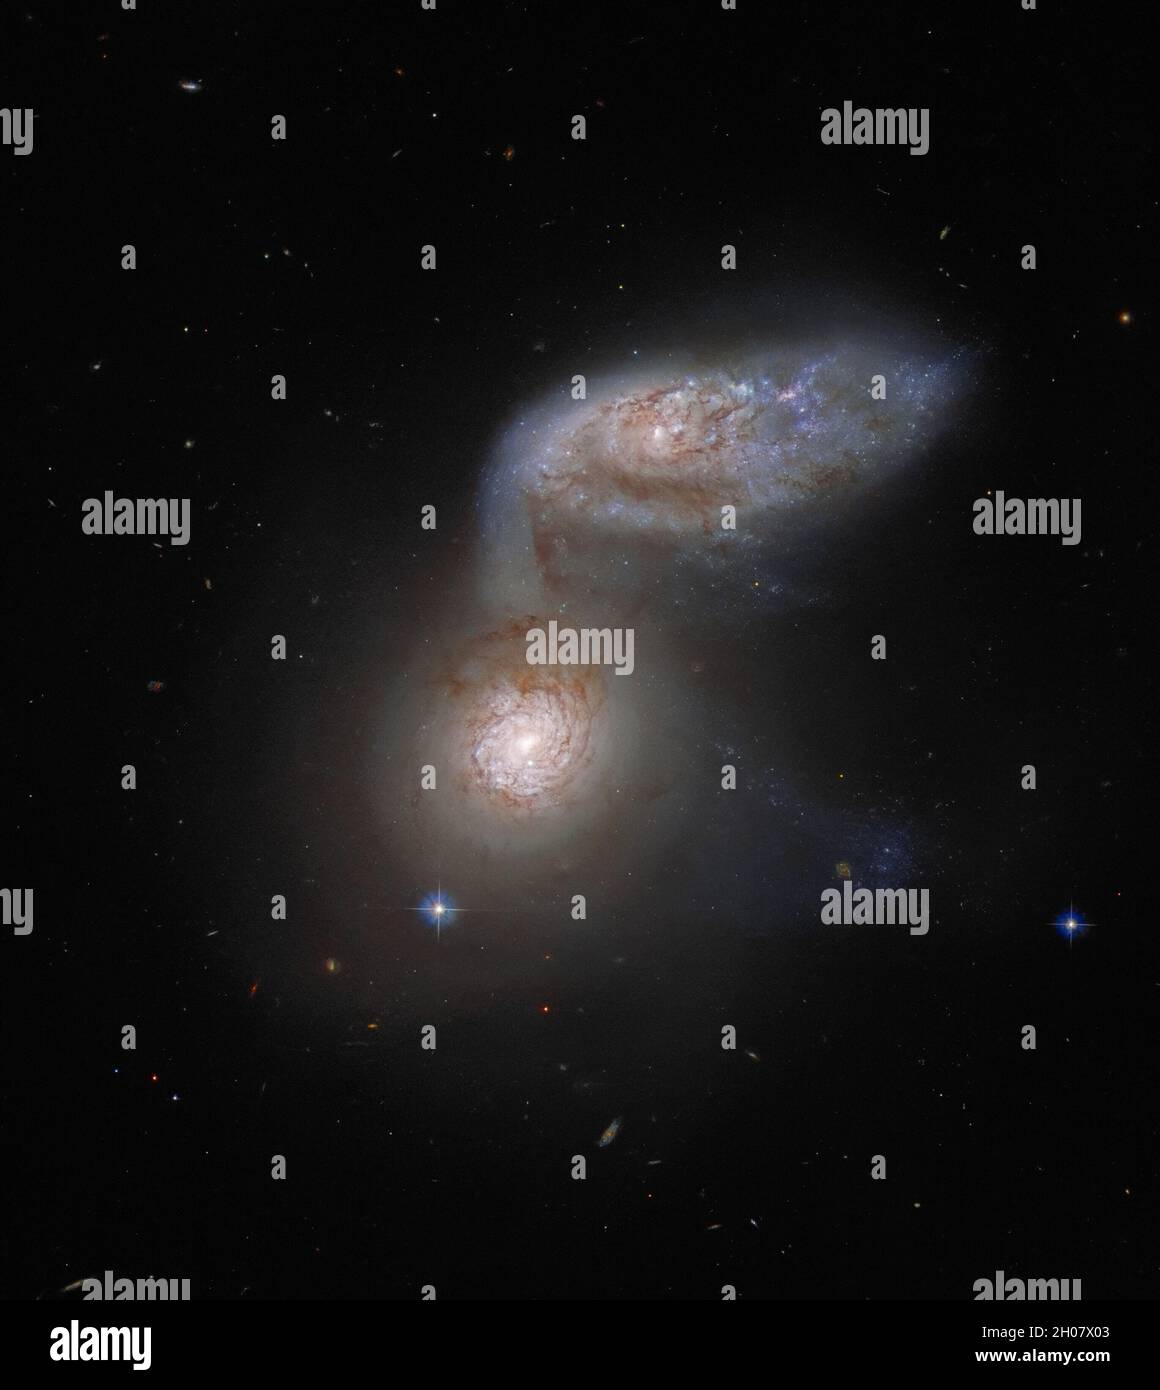 Dieses NASA-Bild der Woche zeigt zwei interagierende Galaxien, die so  miteinander verflochten sind, dass sie einen kollektiven Namen haben - Arp  91. Dieser zarte galaktische Tanz findet über 100 Millionen Lichtjahre von